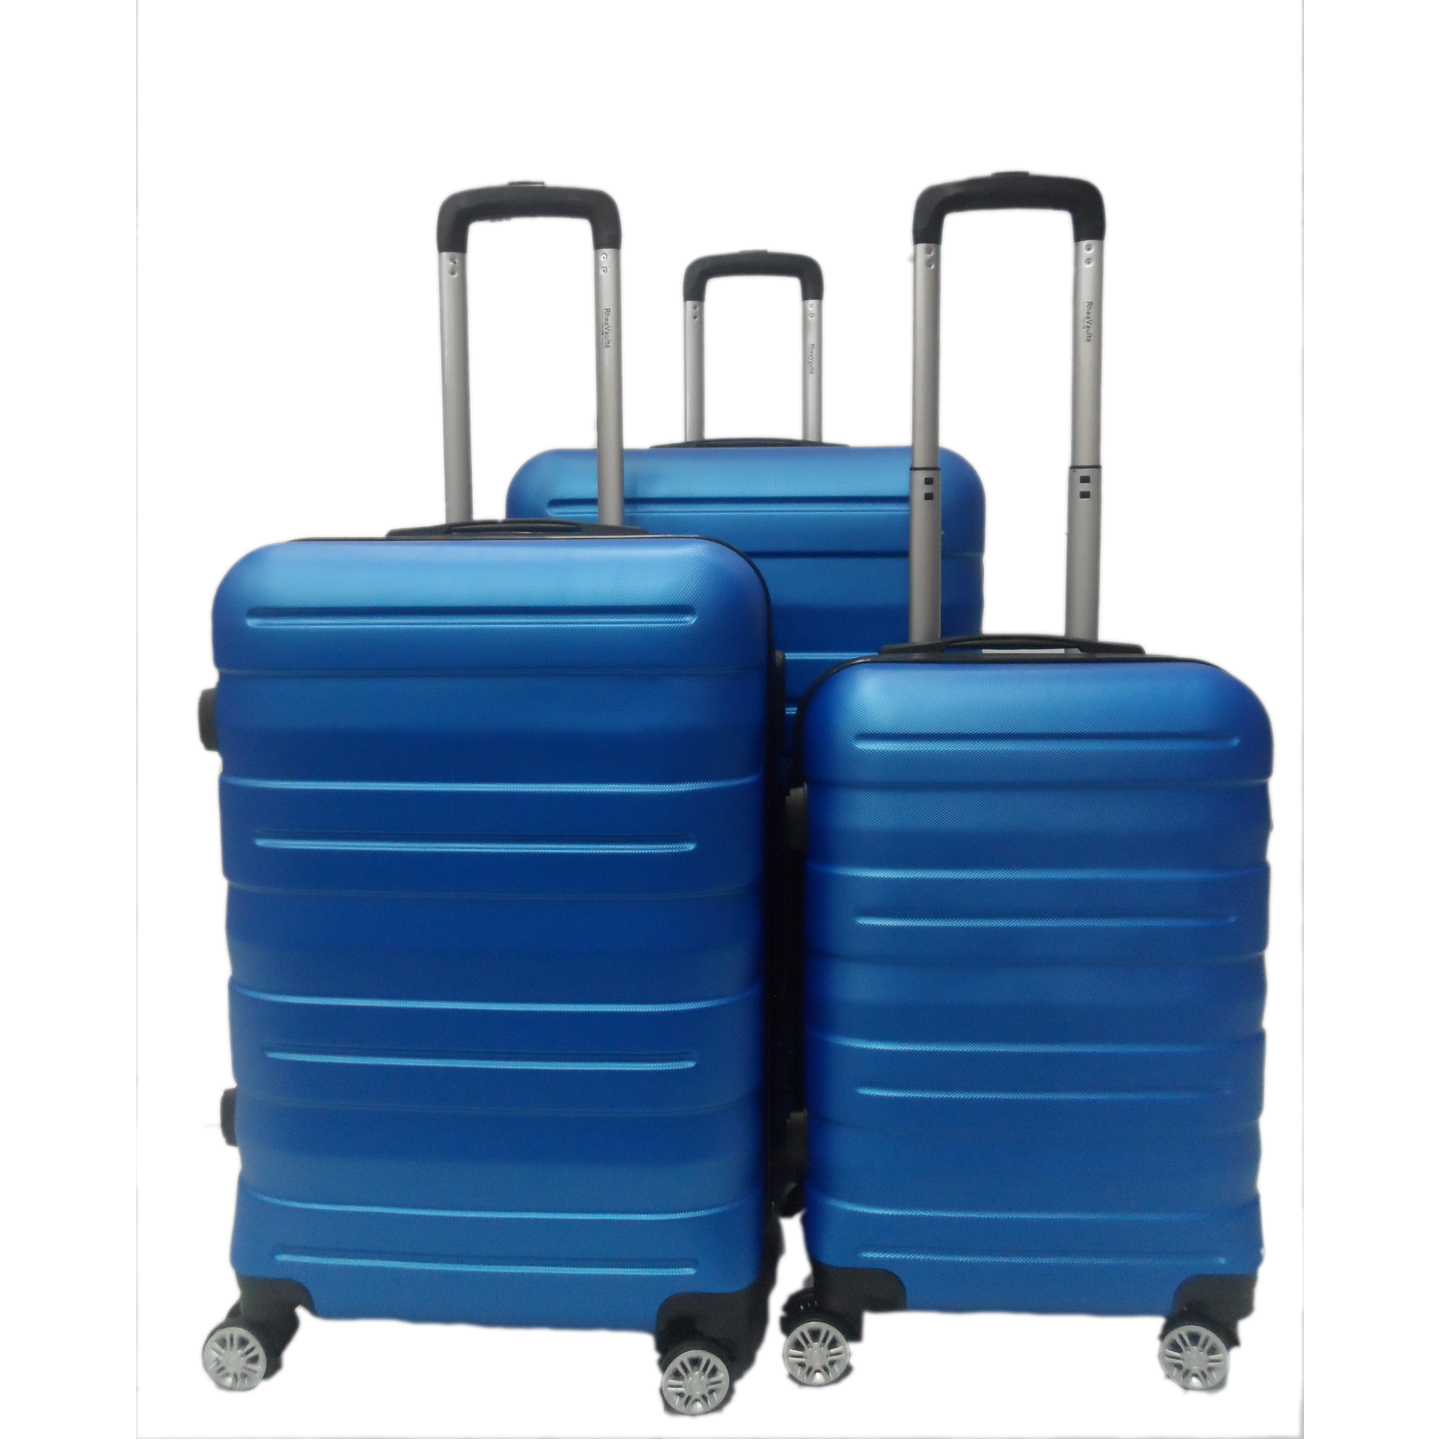 RV-130 Elegant Hard Box Luggage - Blue  20 inch, 24 inch, 28 inch